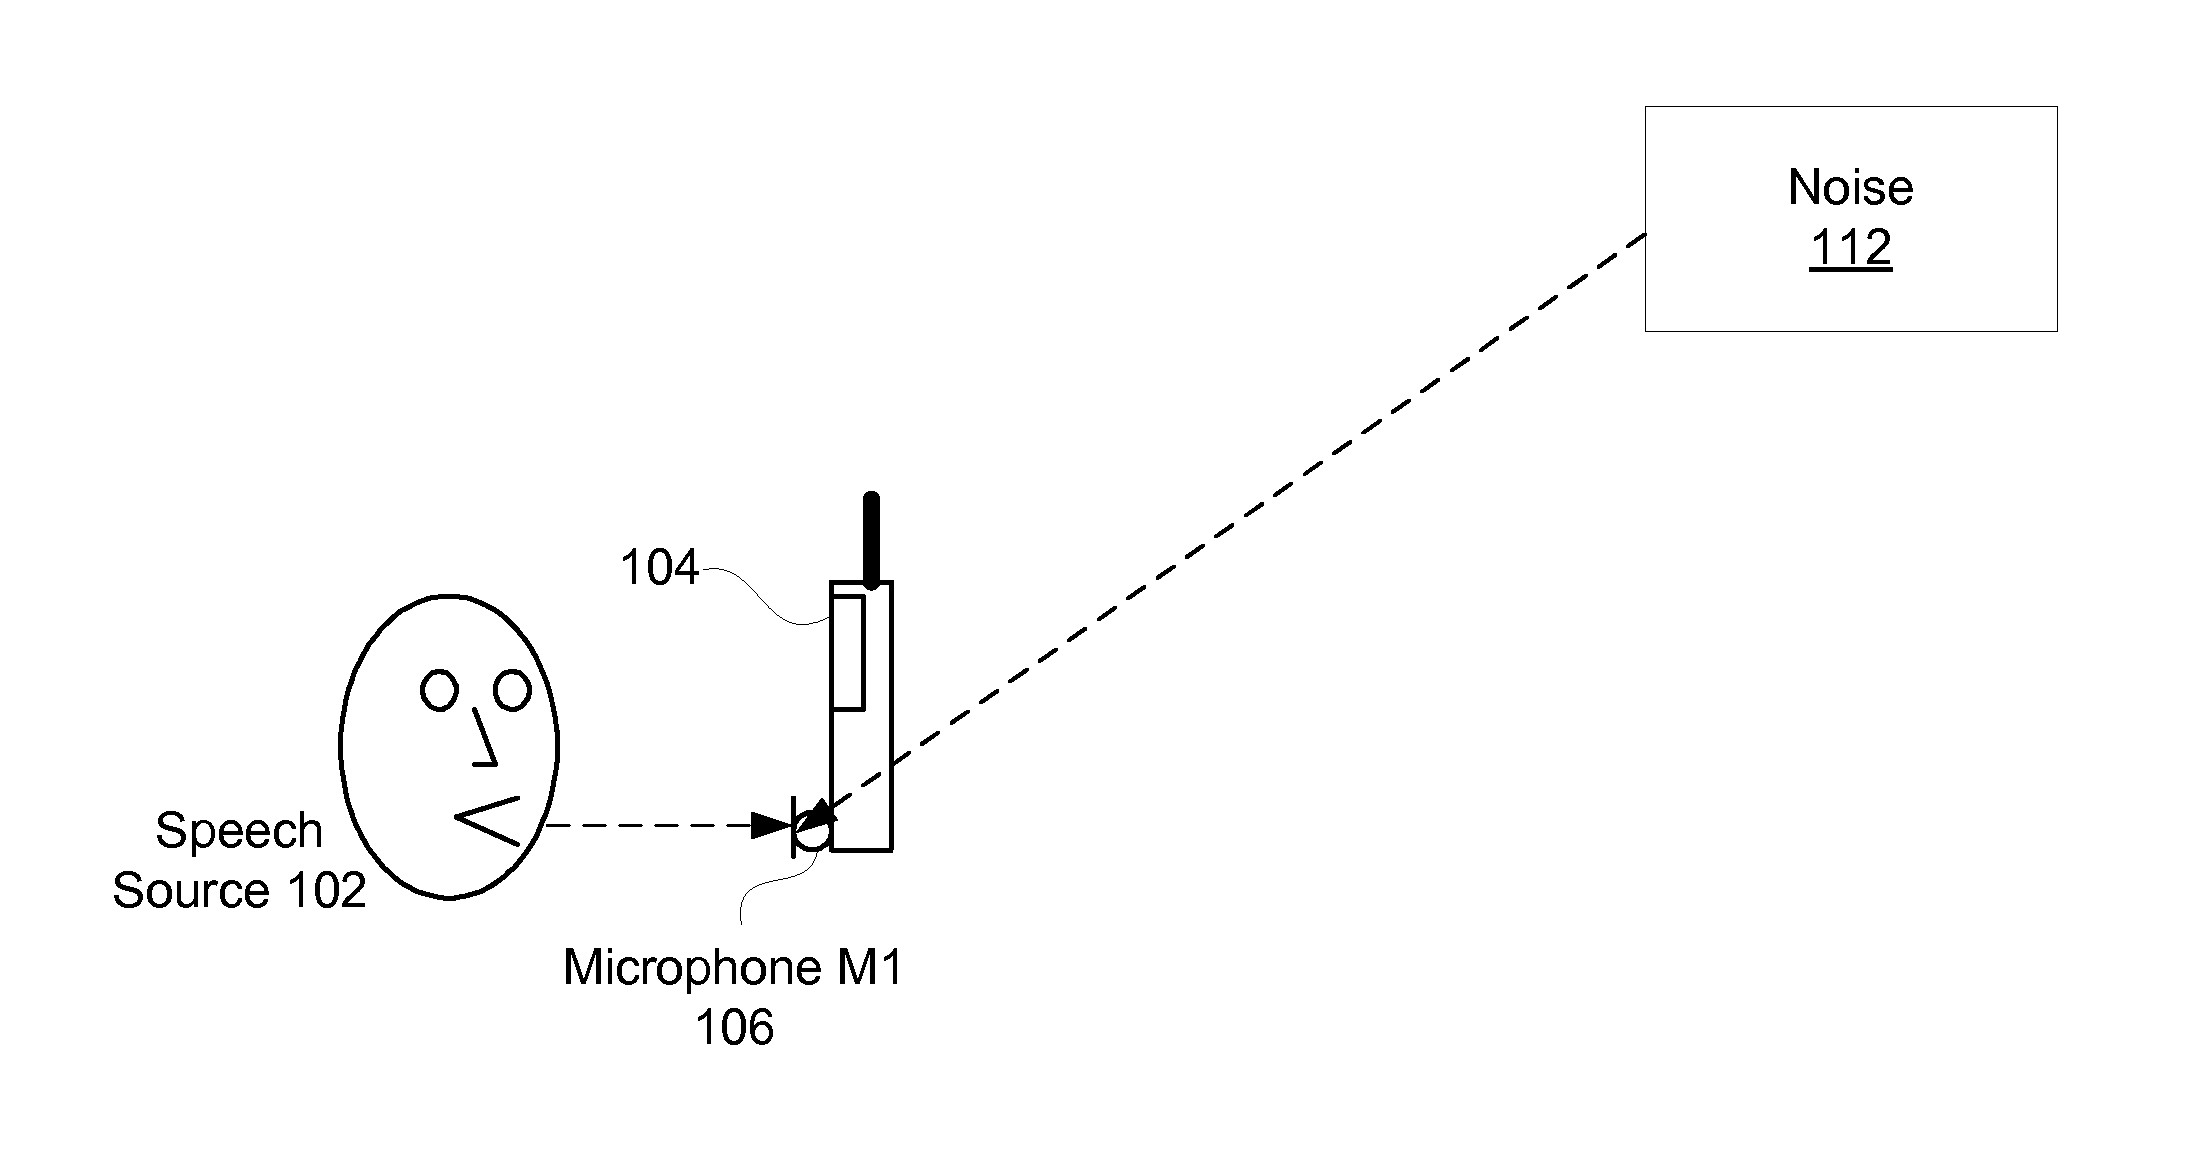 Monaural Noise Suppression Based on Computational Auditory Scene Analysis